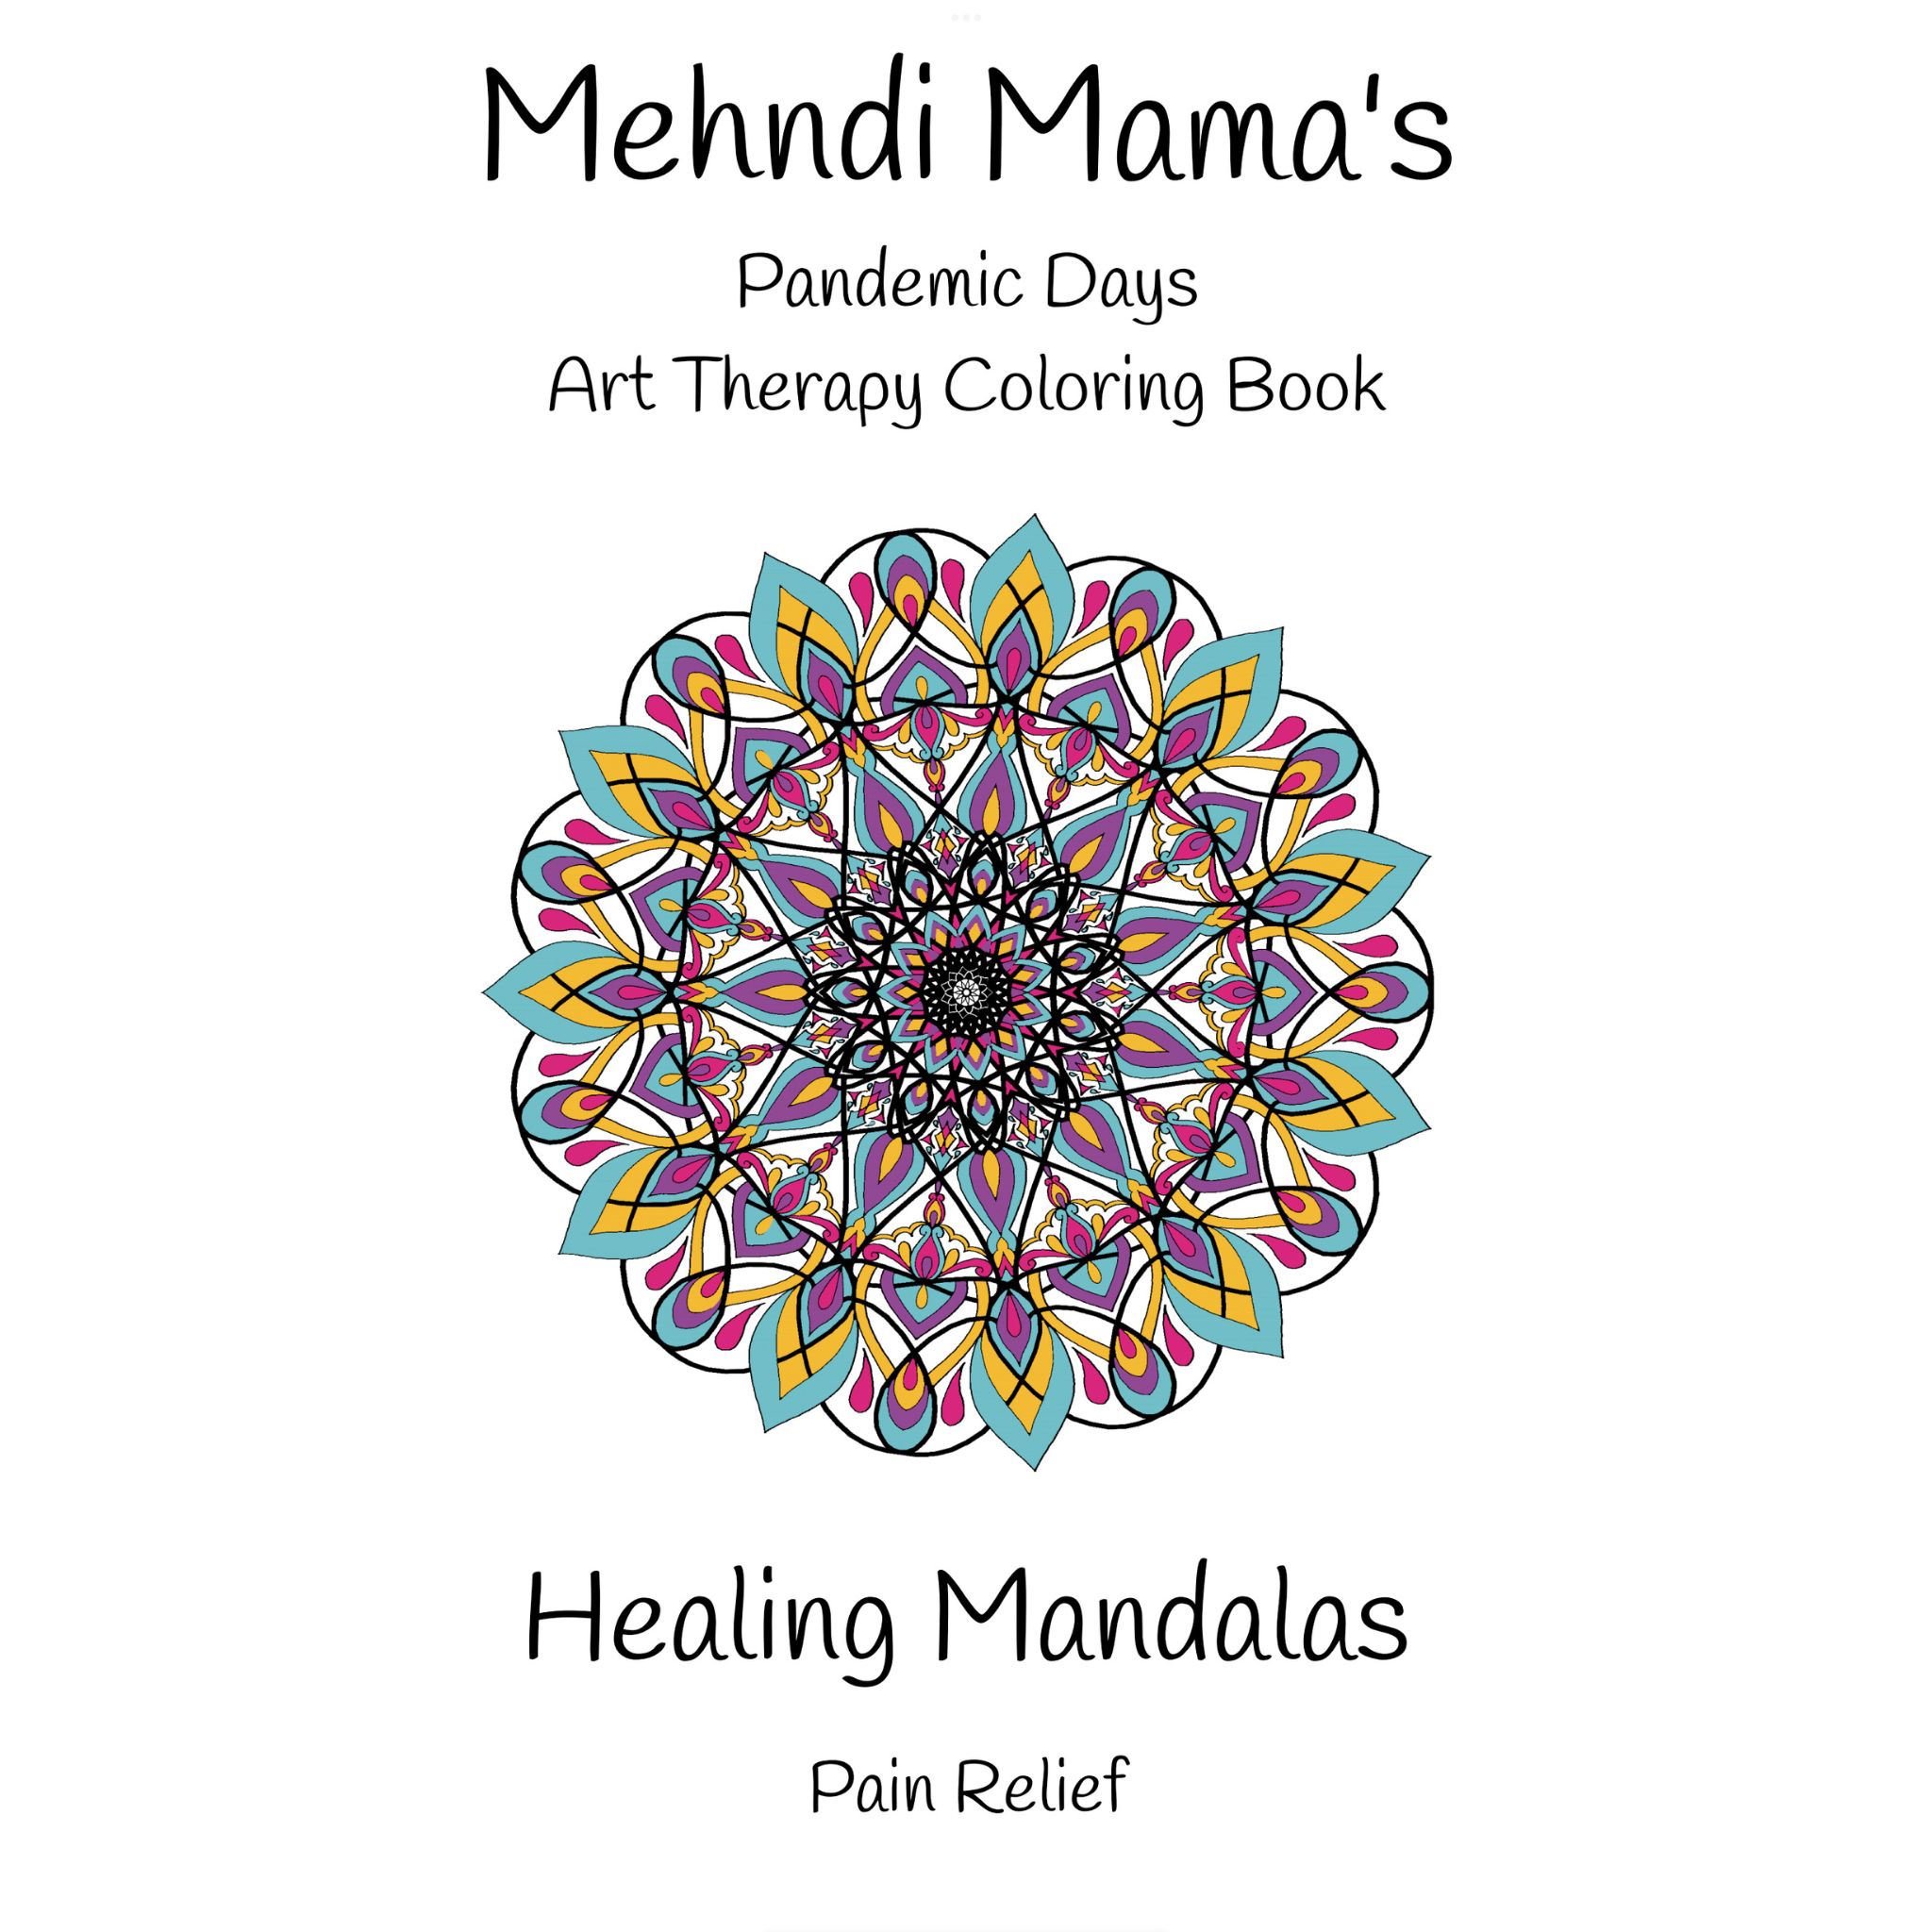 Mehndi mamas healing mandalas coloring book for pain relief